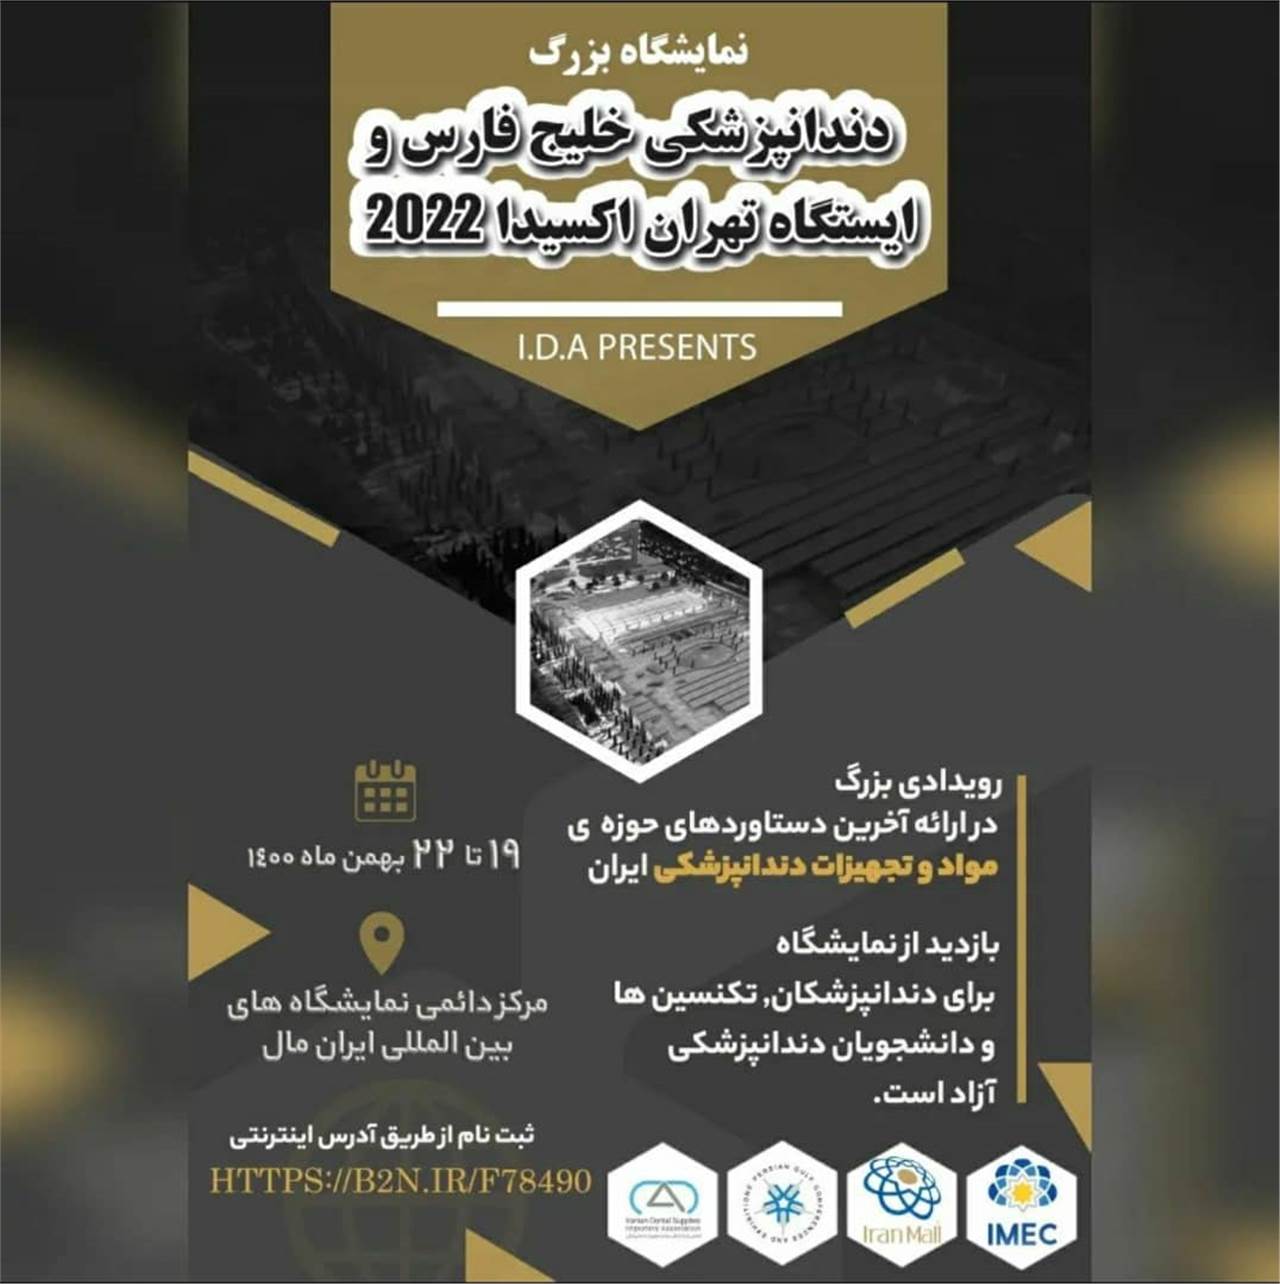 نمایشگاه دندانپزشکی خلیج فارس و ایستگاه تهران اکسیدا 2022